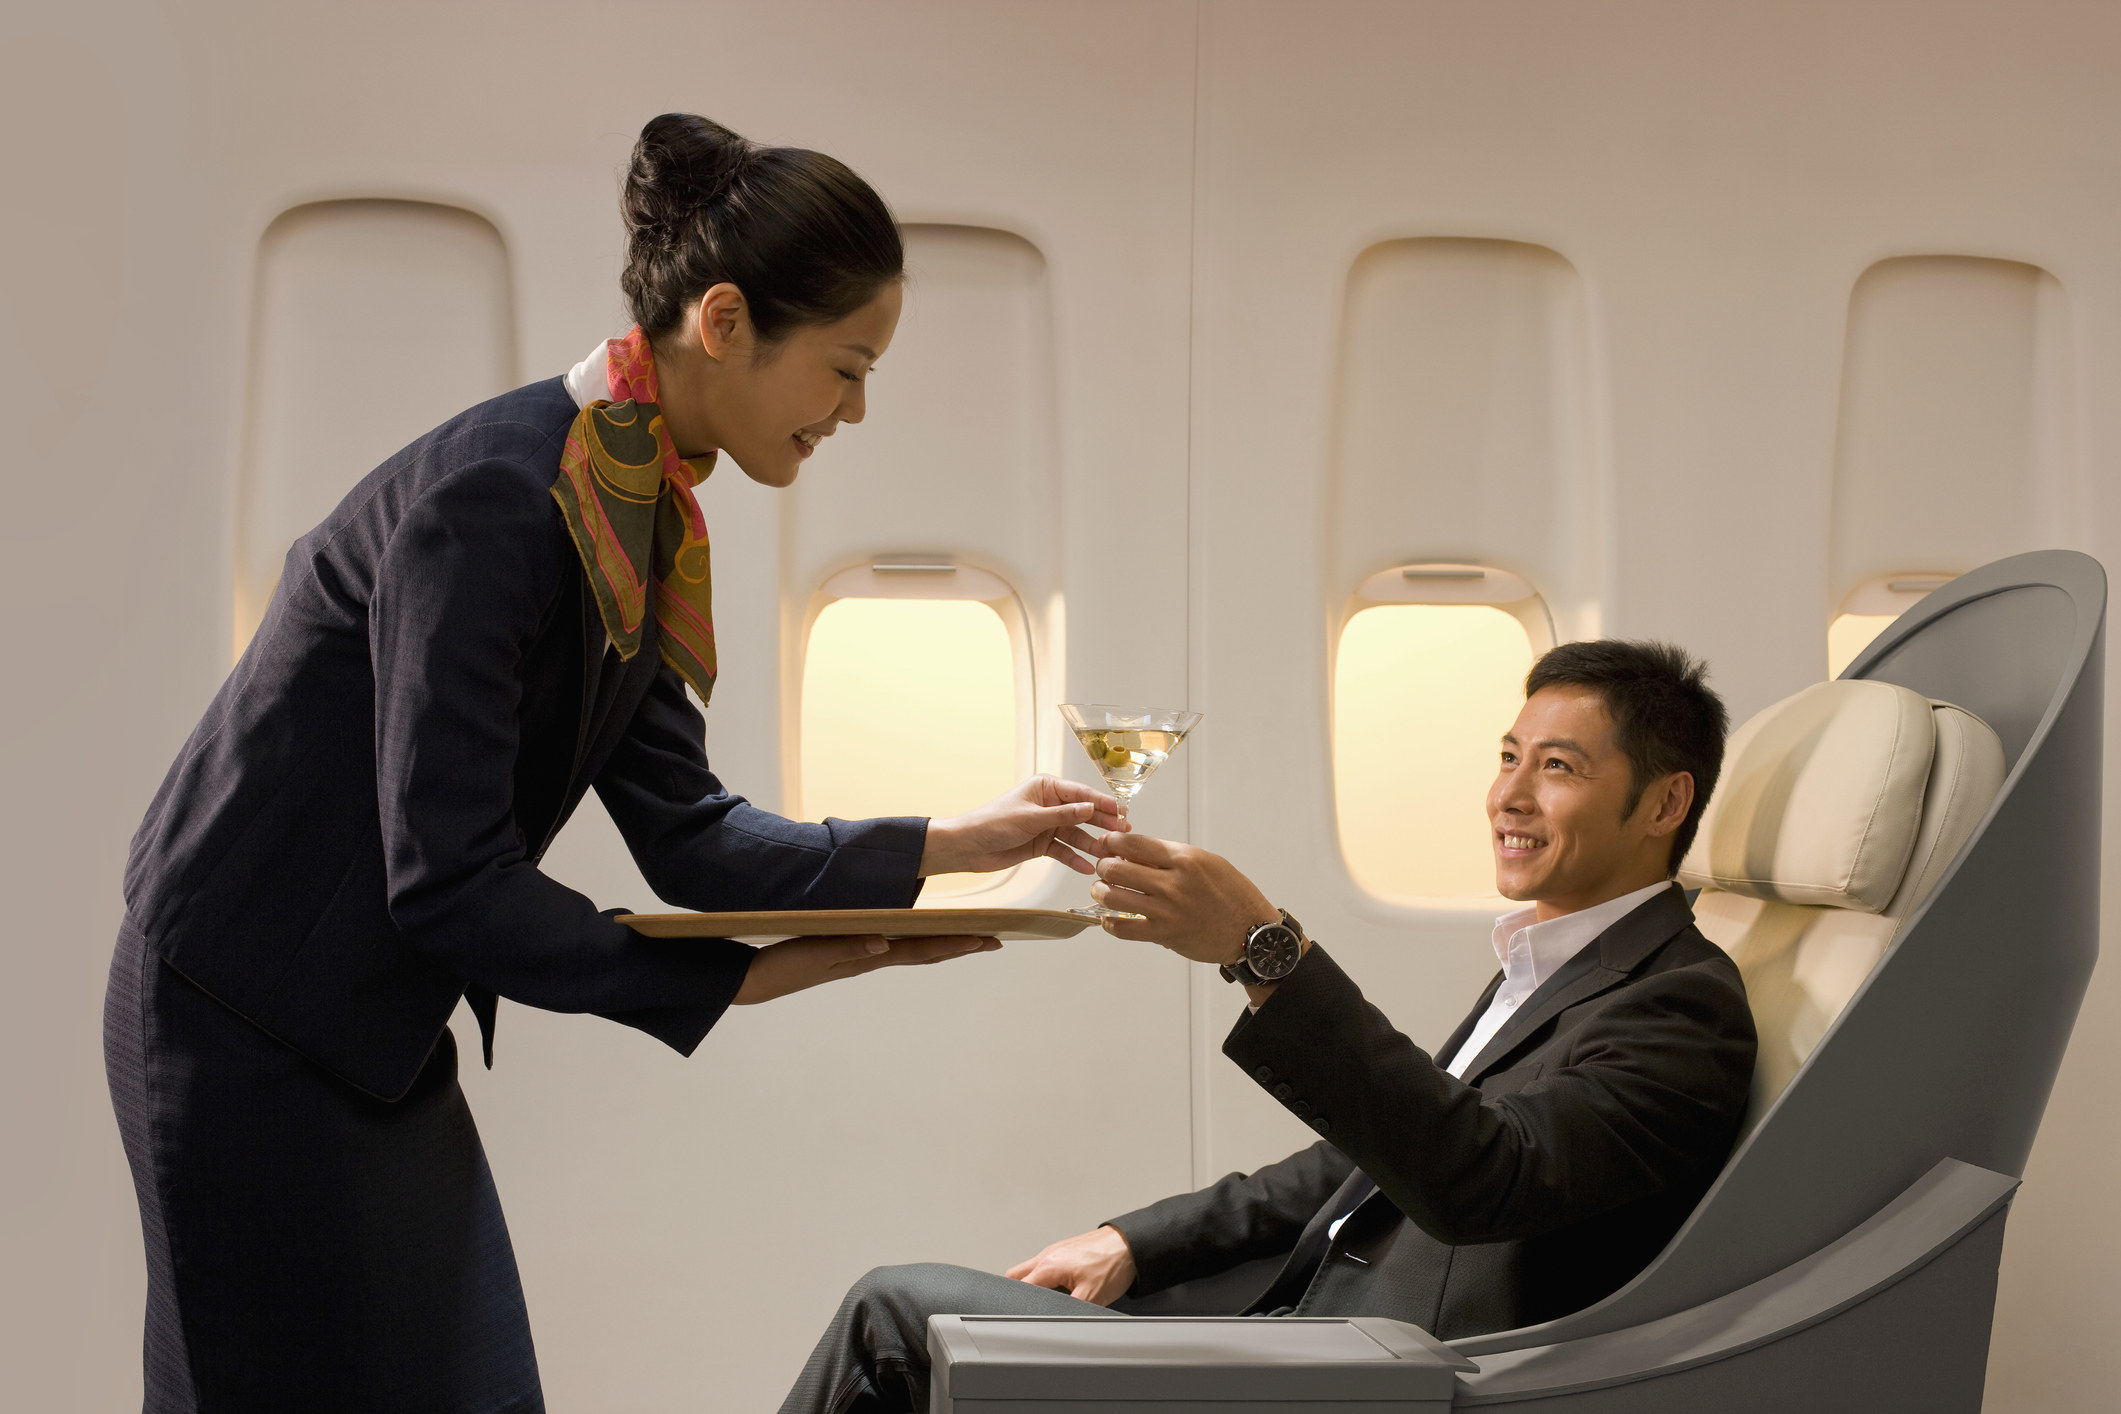 A flight attendant handing a man a drink